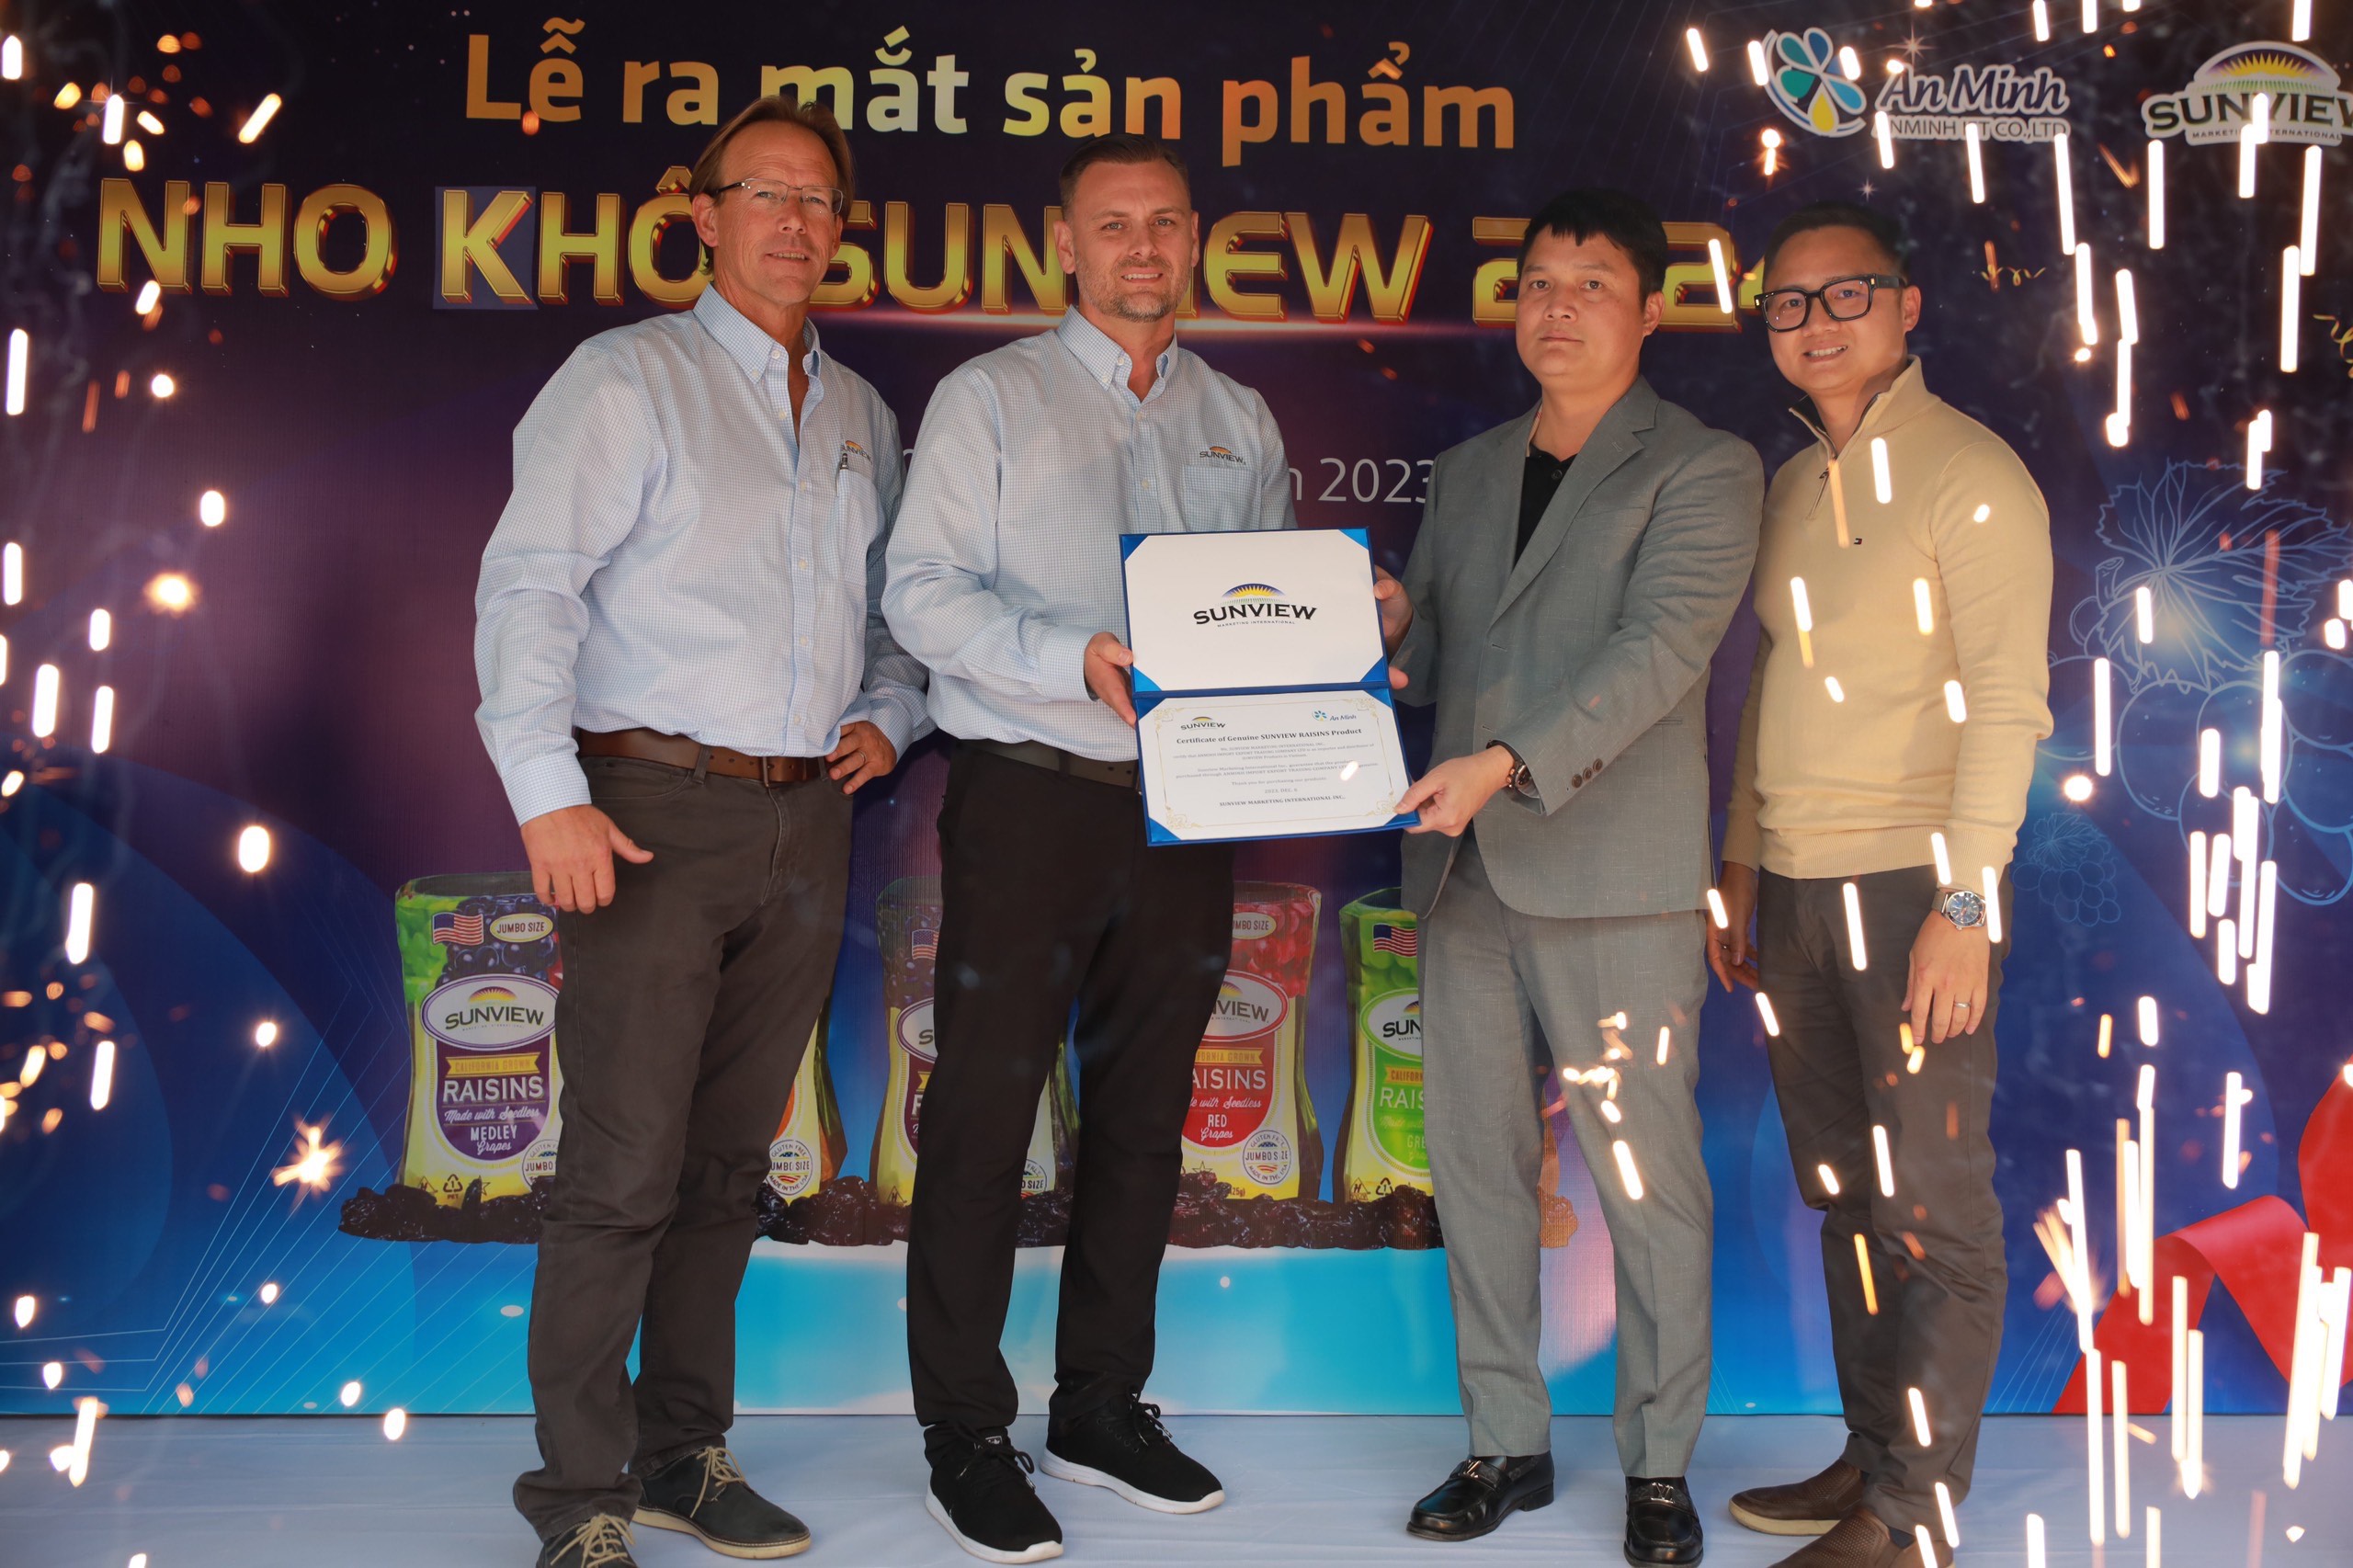 An Minh chính thức phân phối nho khô Sunview 2024 tại thị trường Việt Nam